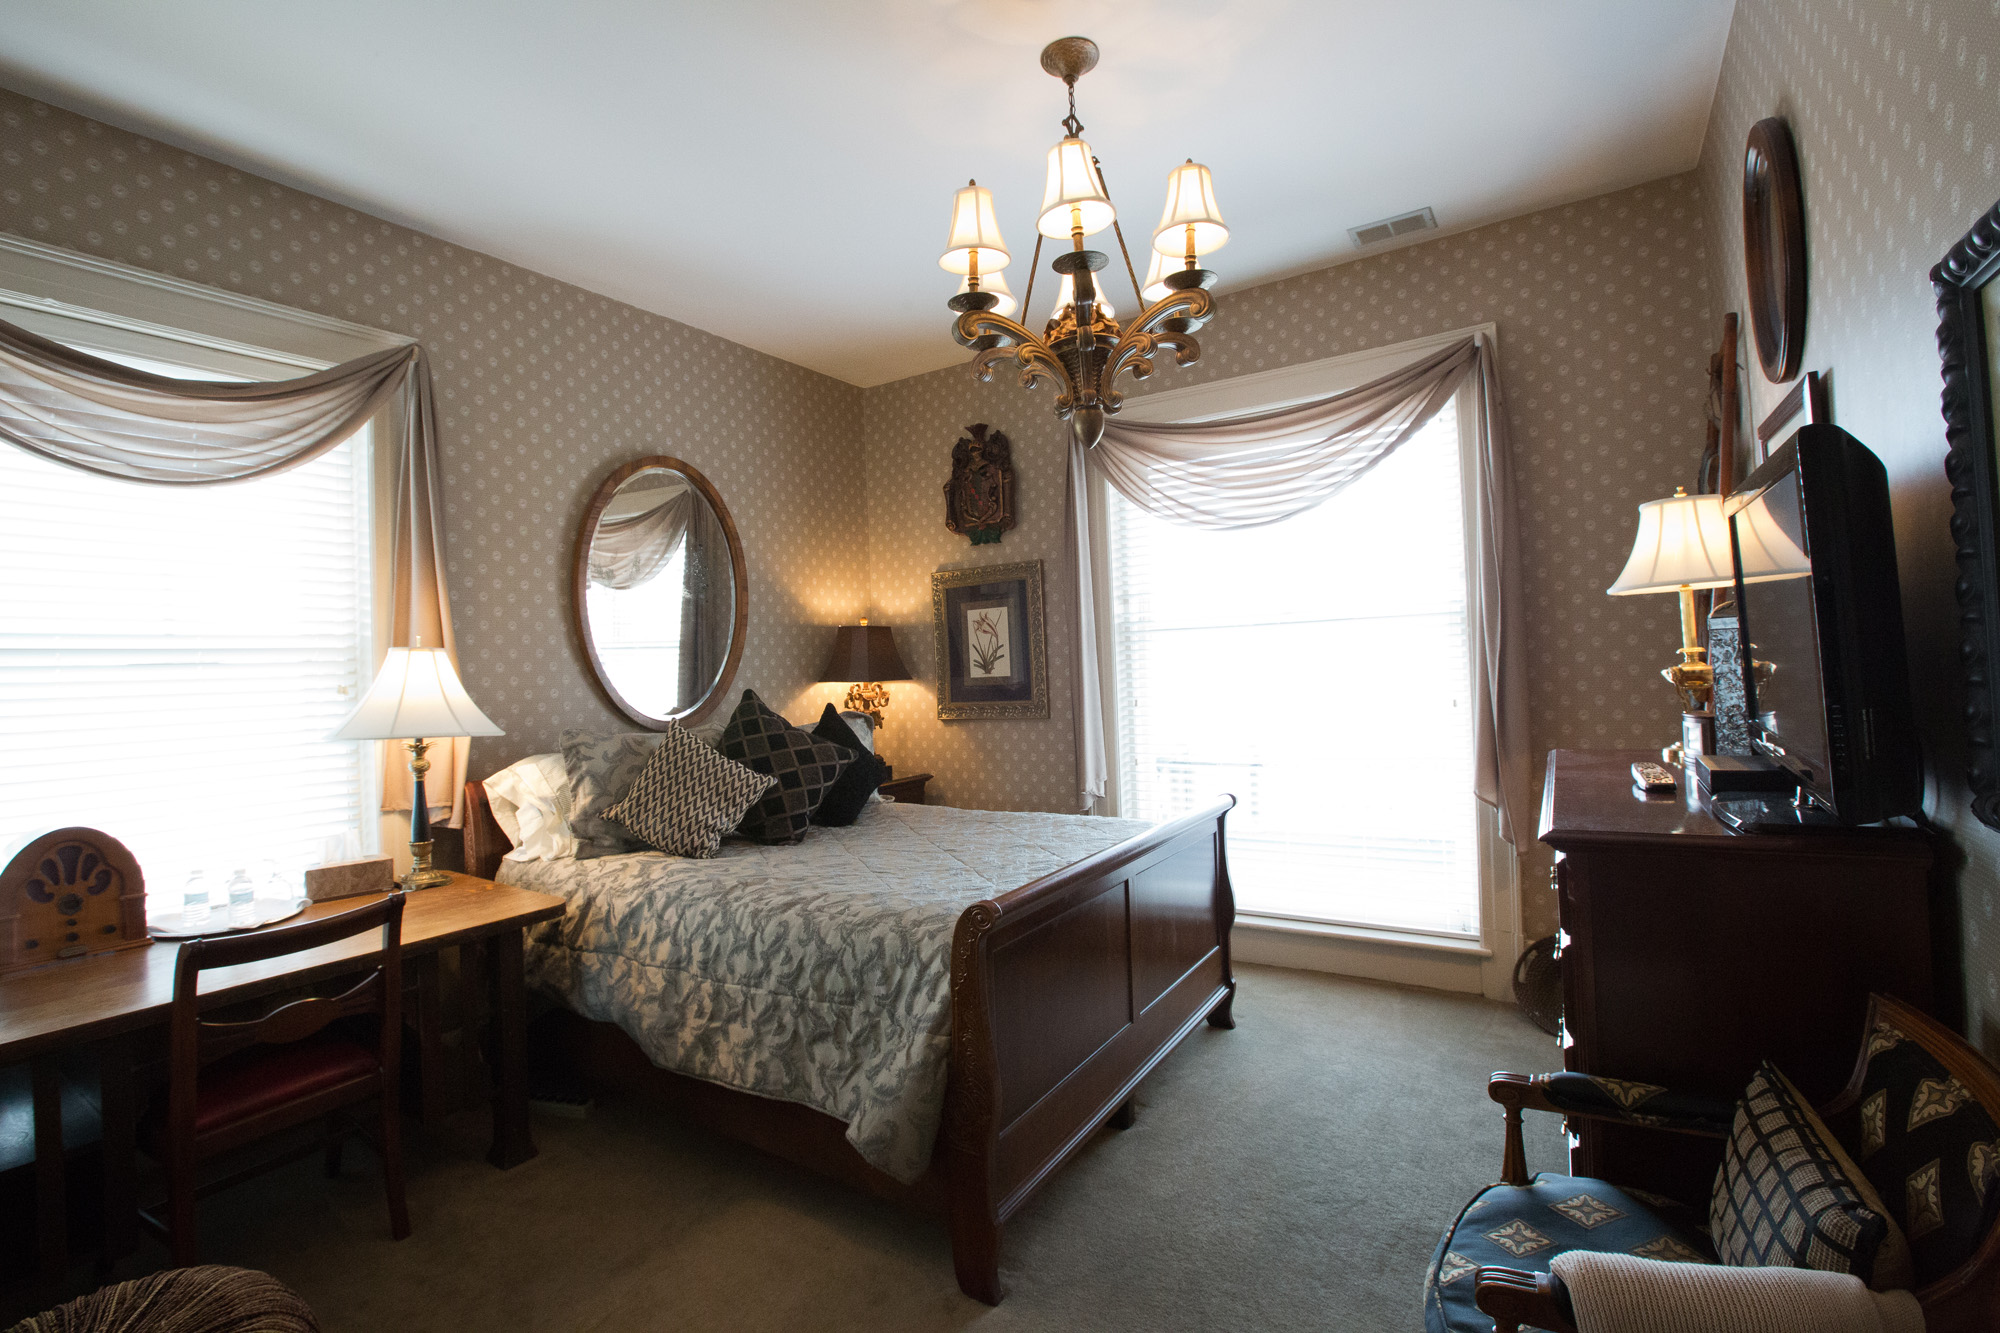  Room 4 - Single Queen Bedroom - $140 per night 